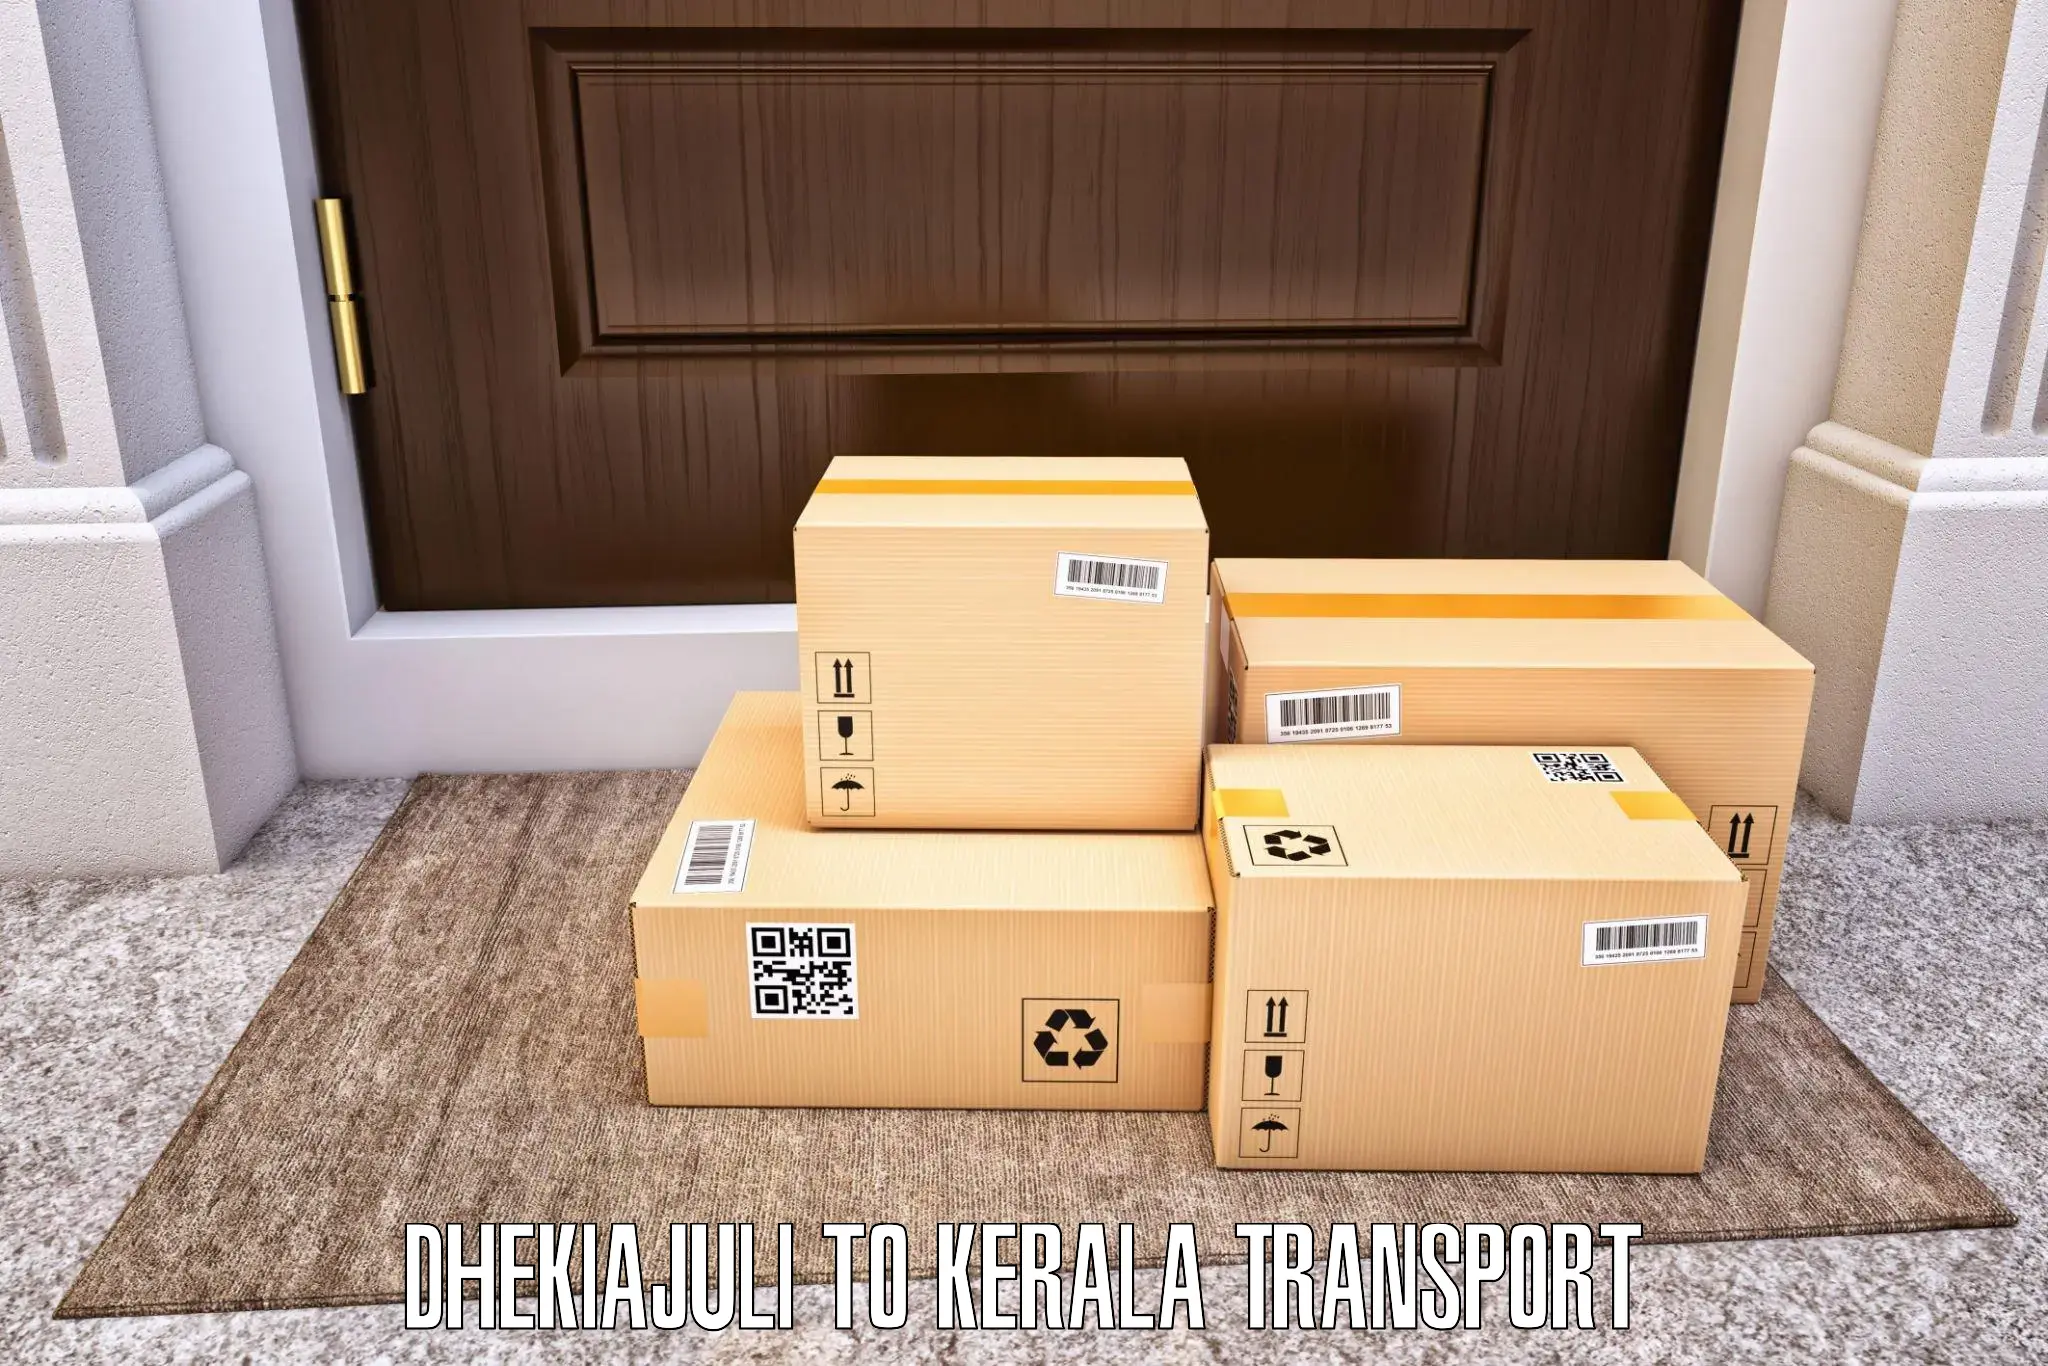 Pick up transport service Dhekiajuli to Kuttiady